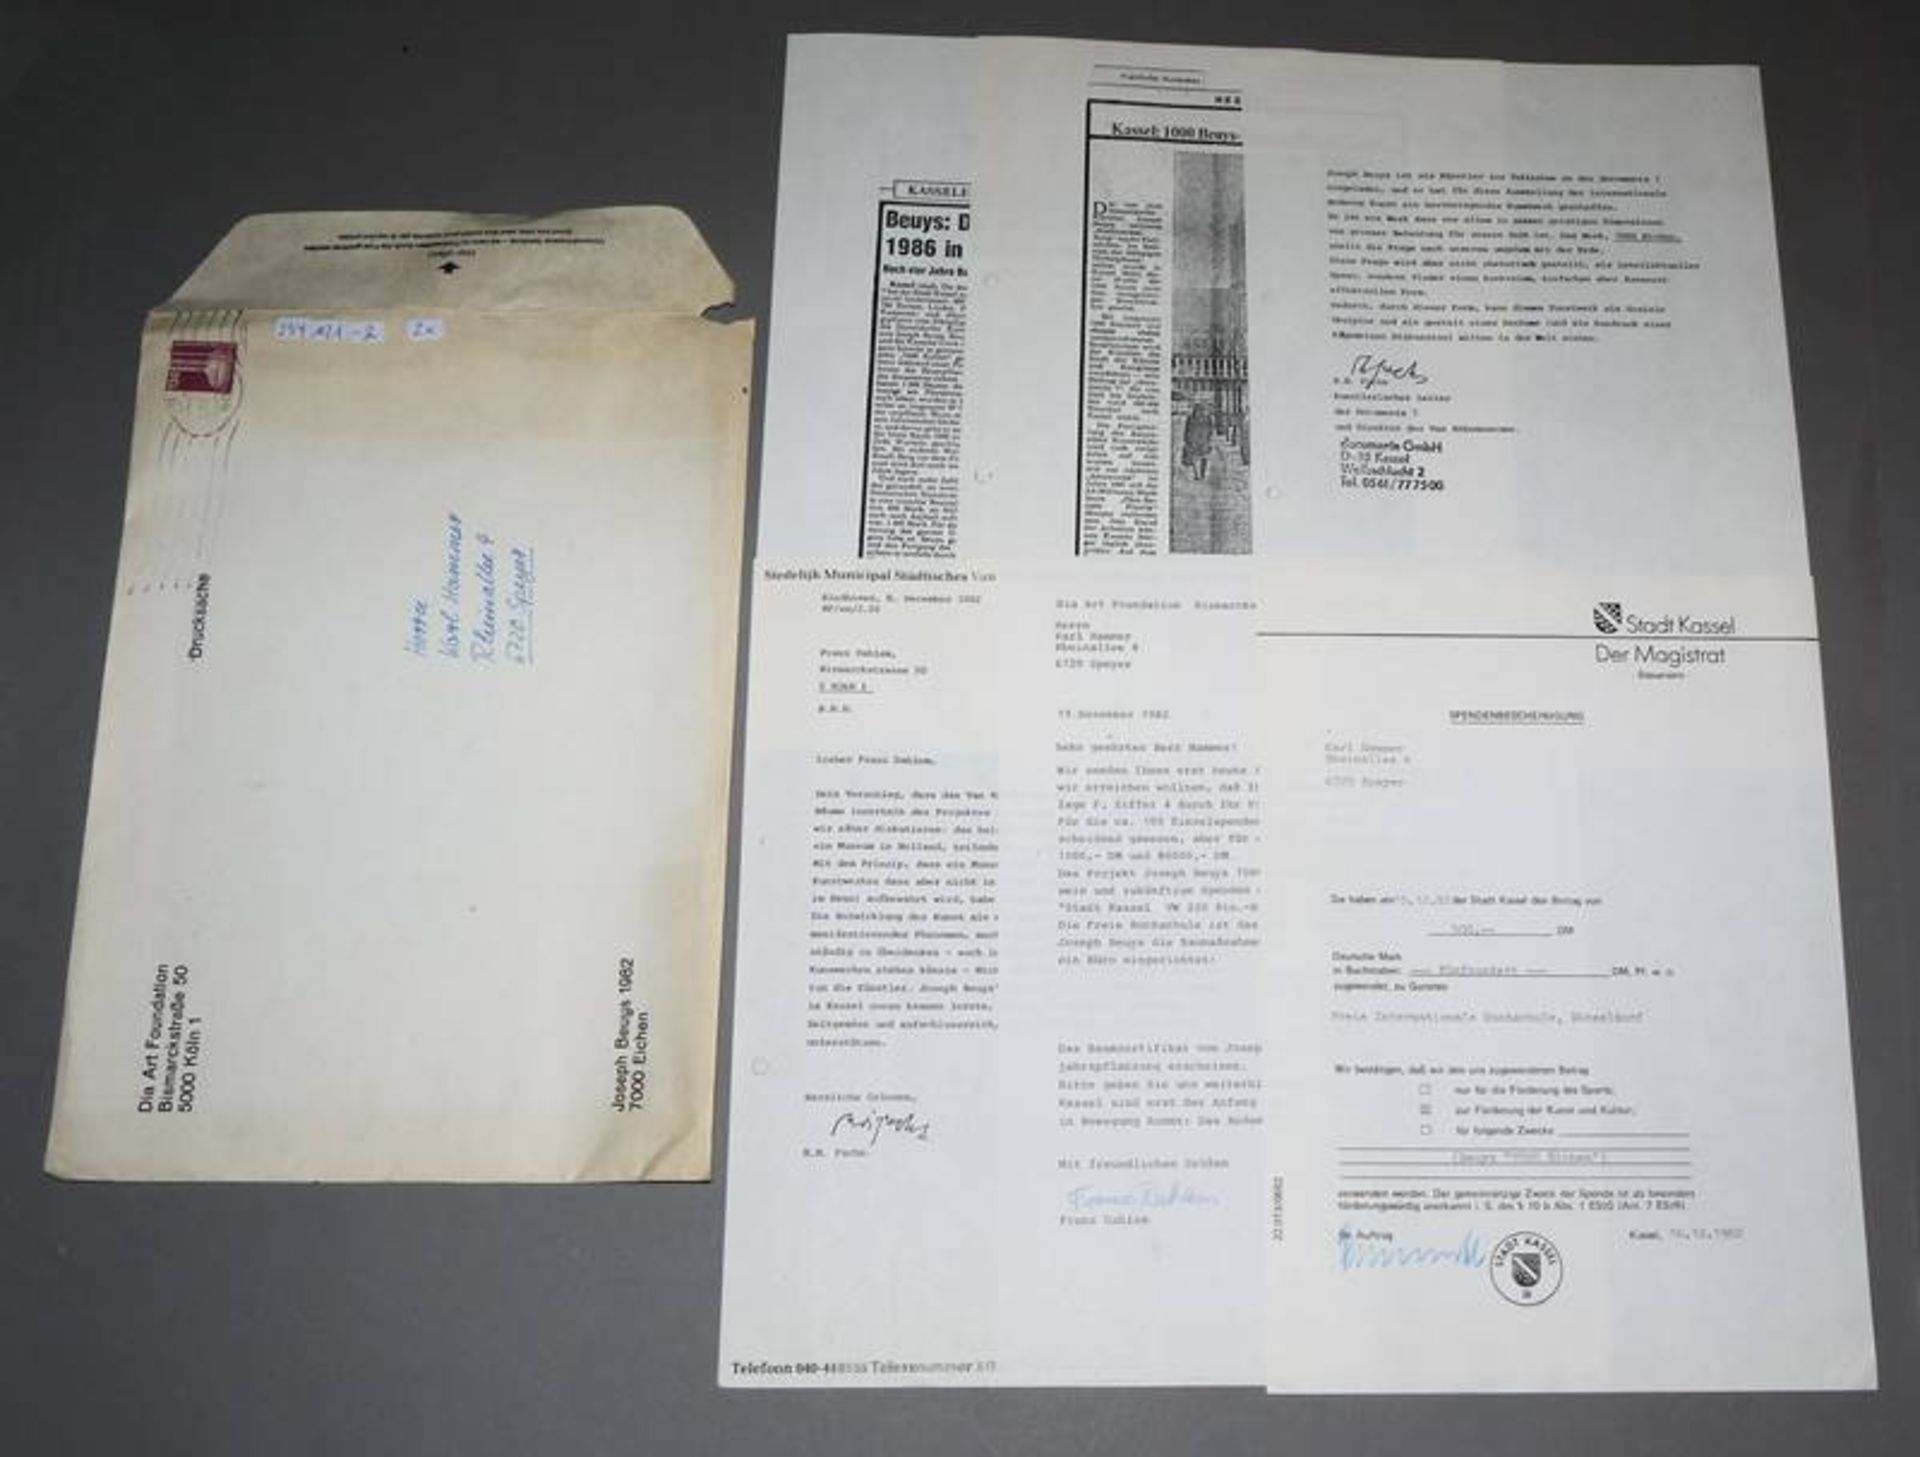 Joseph Beuys, "7000 Eichen" Katalog & div. Dokumente (originale Spendenbescheinigung für eine Eiche - Image 2 of 4